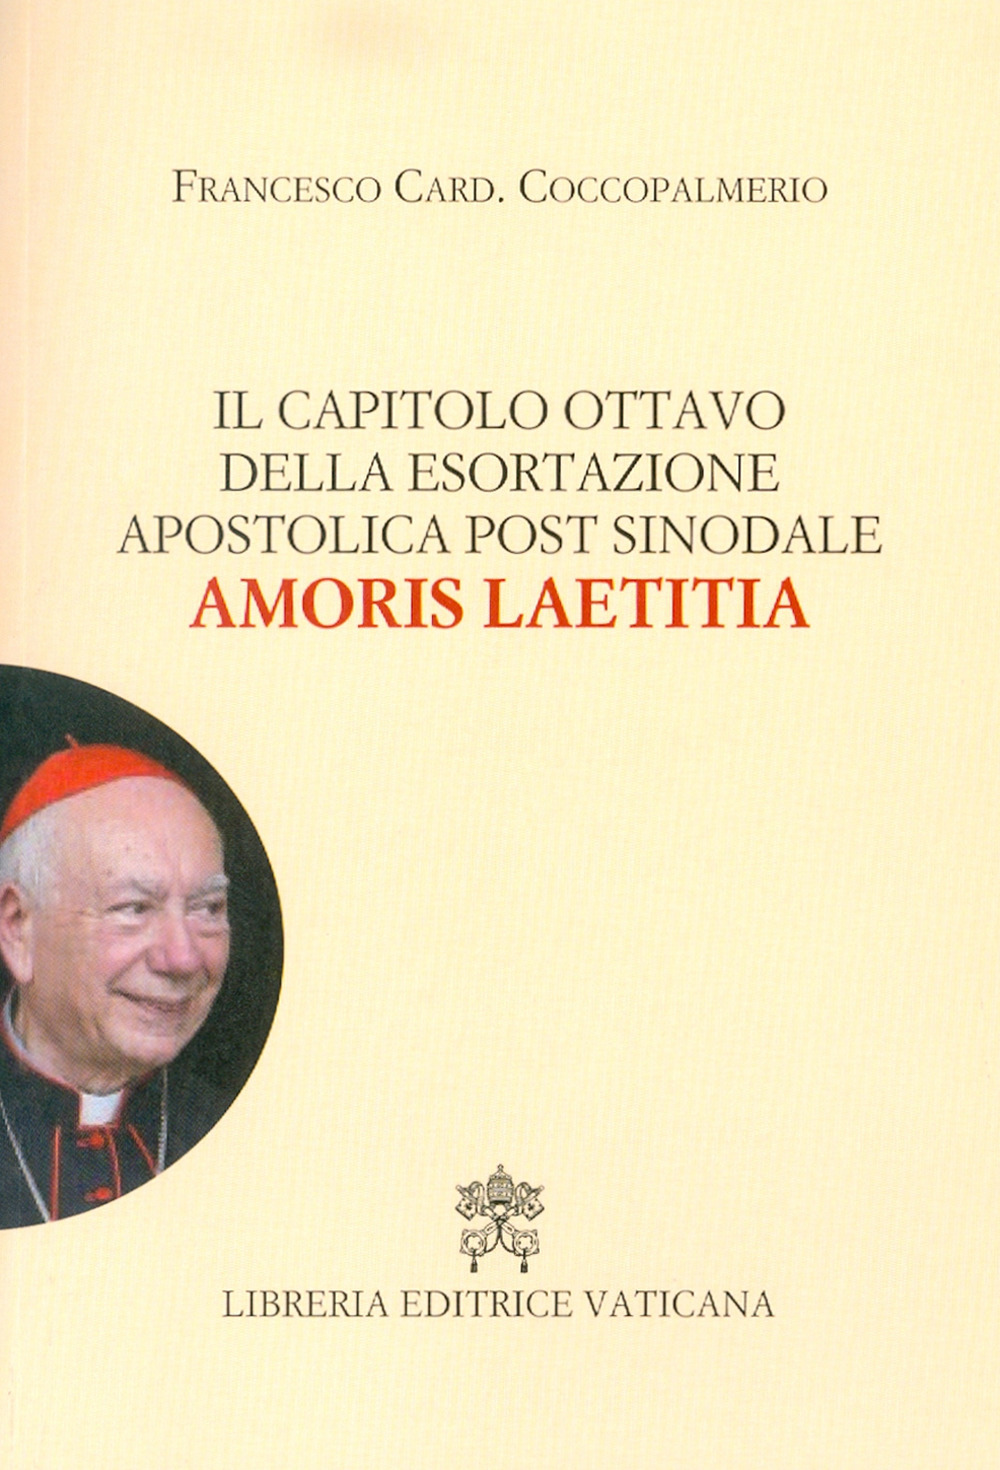 Image of Il capitolo ottavo della esortazione apostolica post sinodale Amoris Laetitia